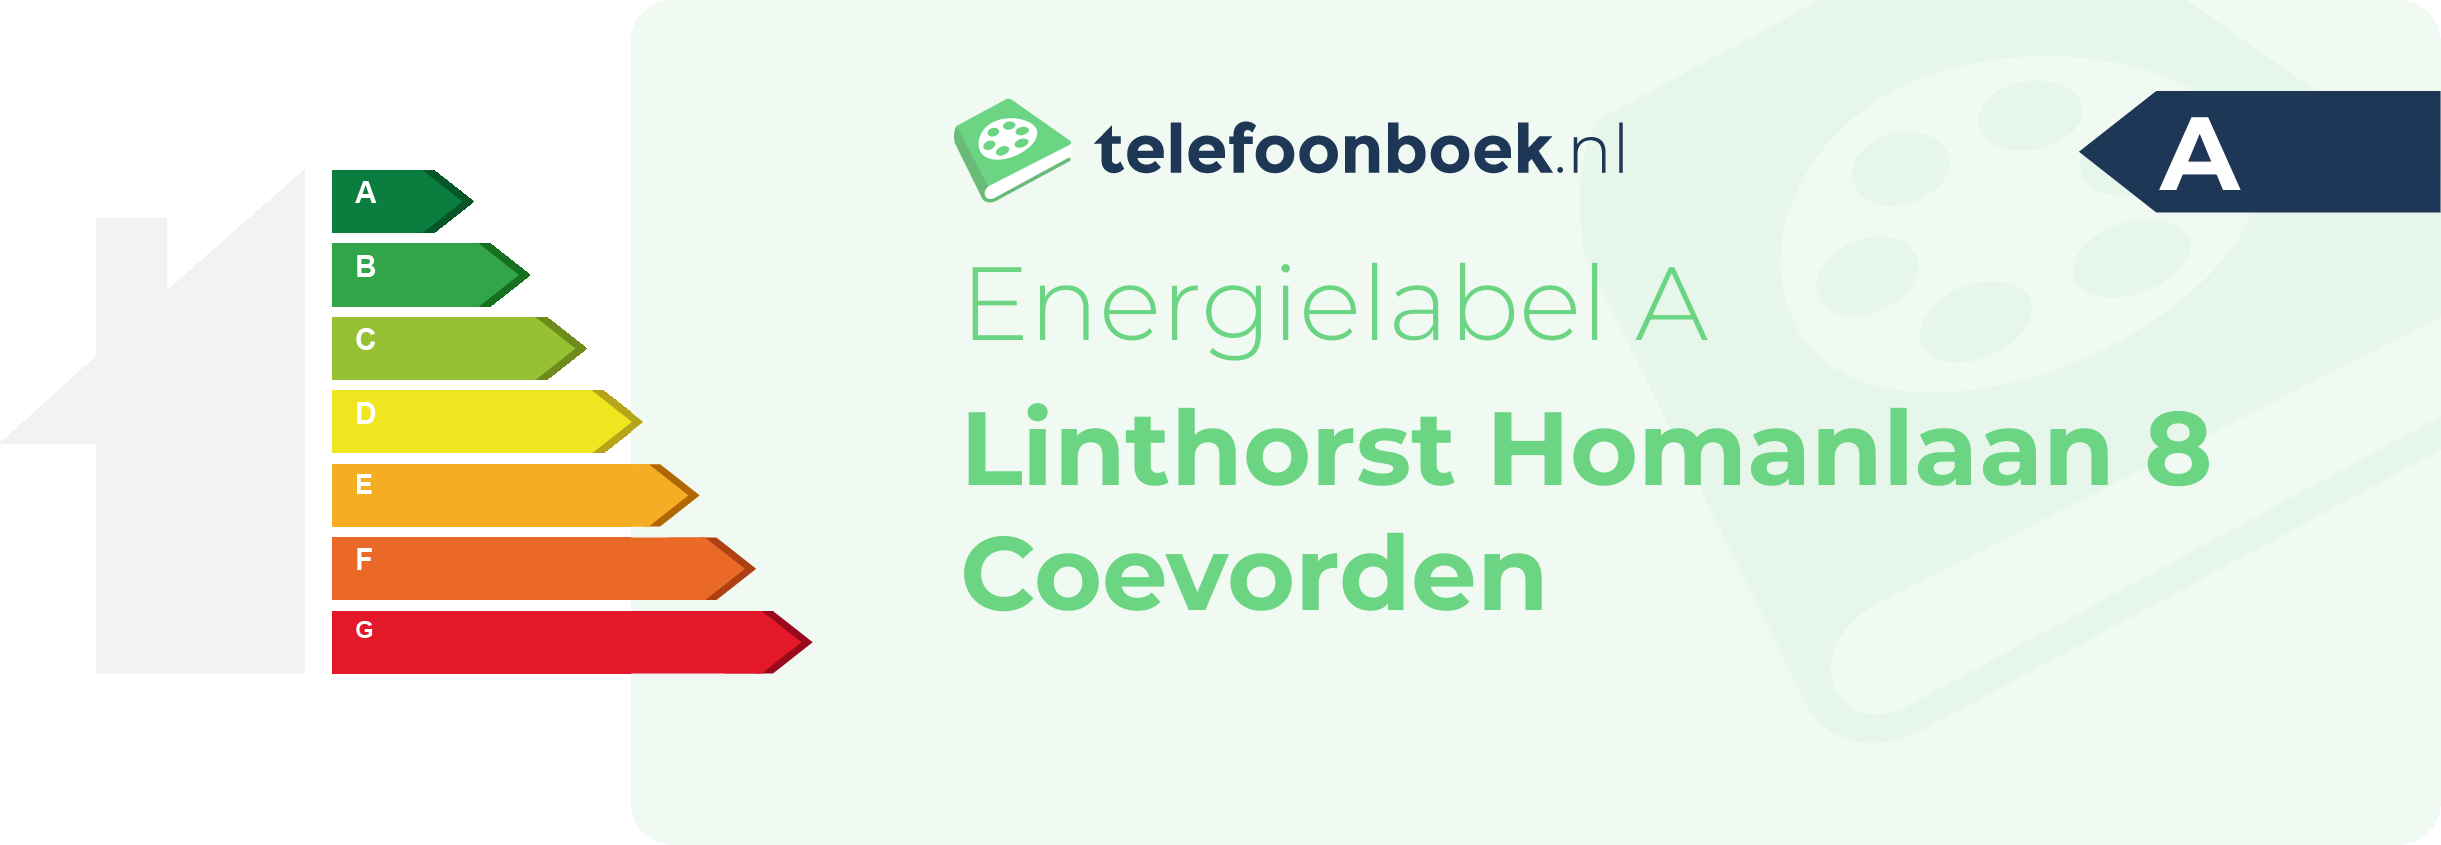 Energielabel Linthorst Homanlaan 8 Coevorden